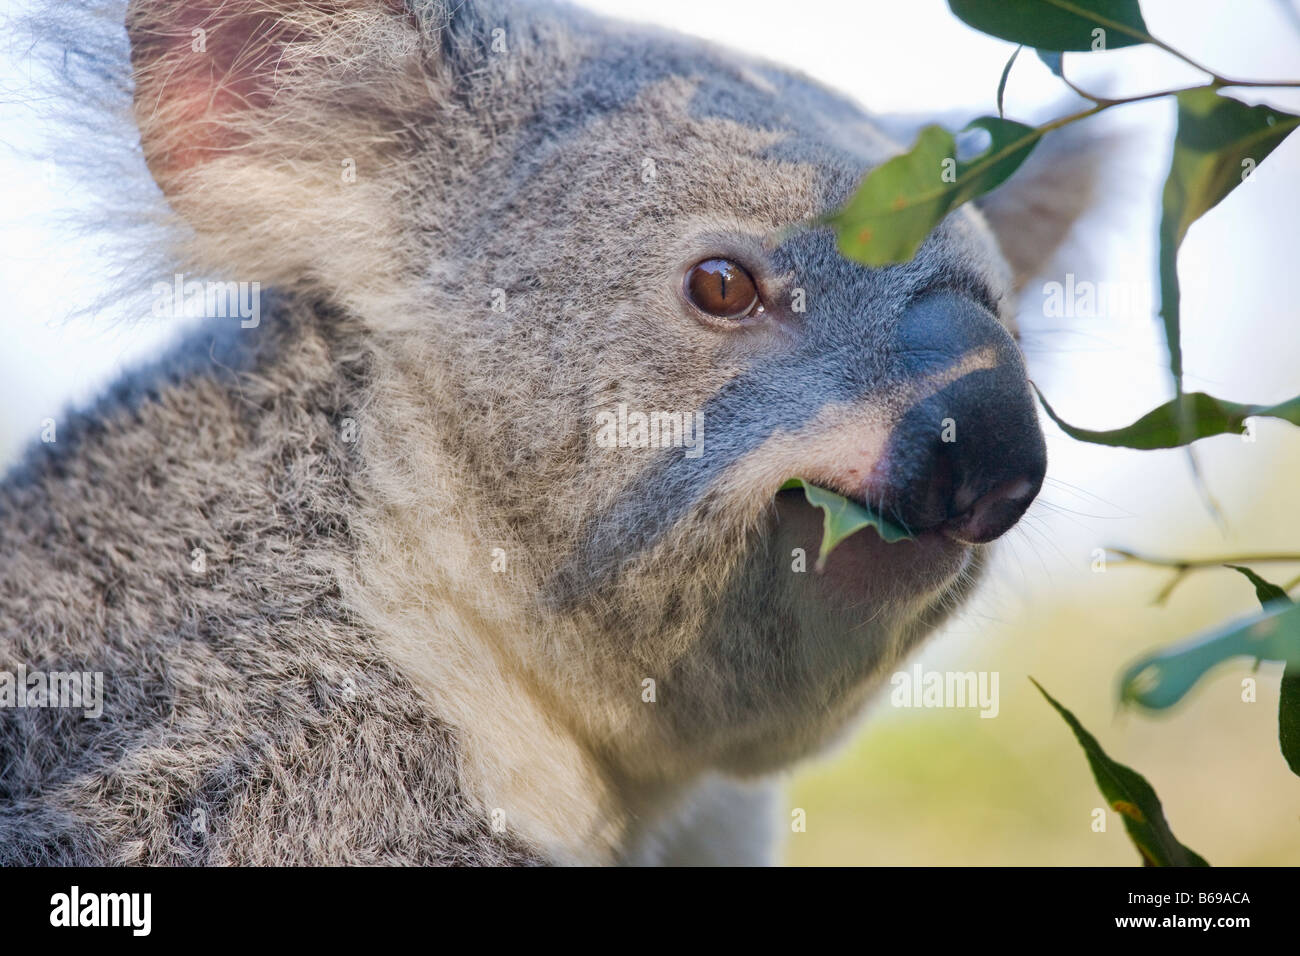 Koala eating gum leaves Stock Photo